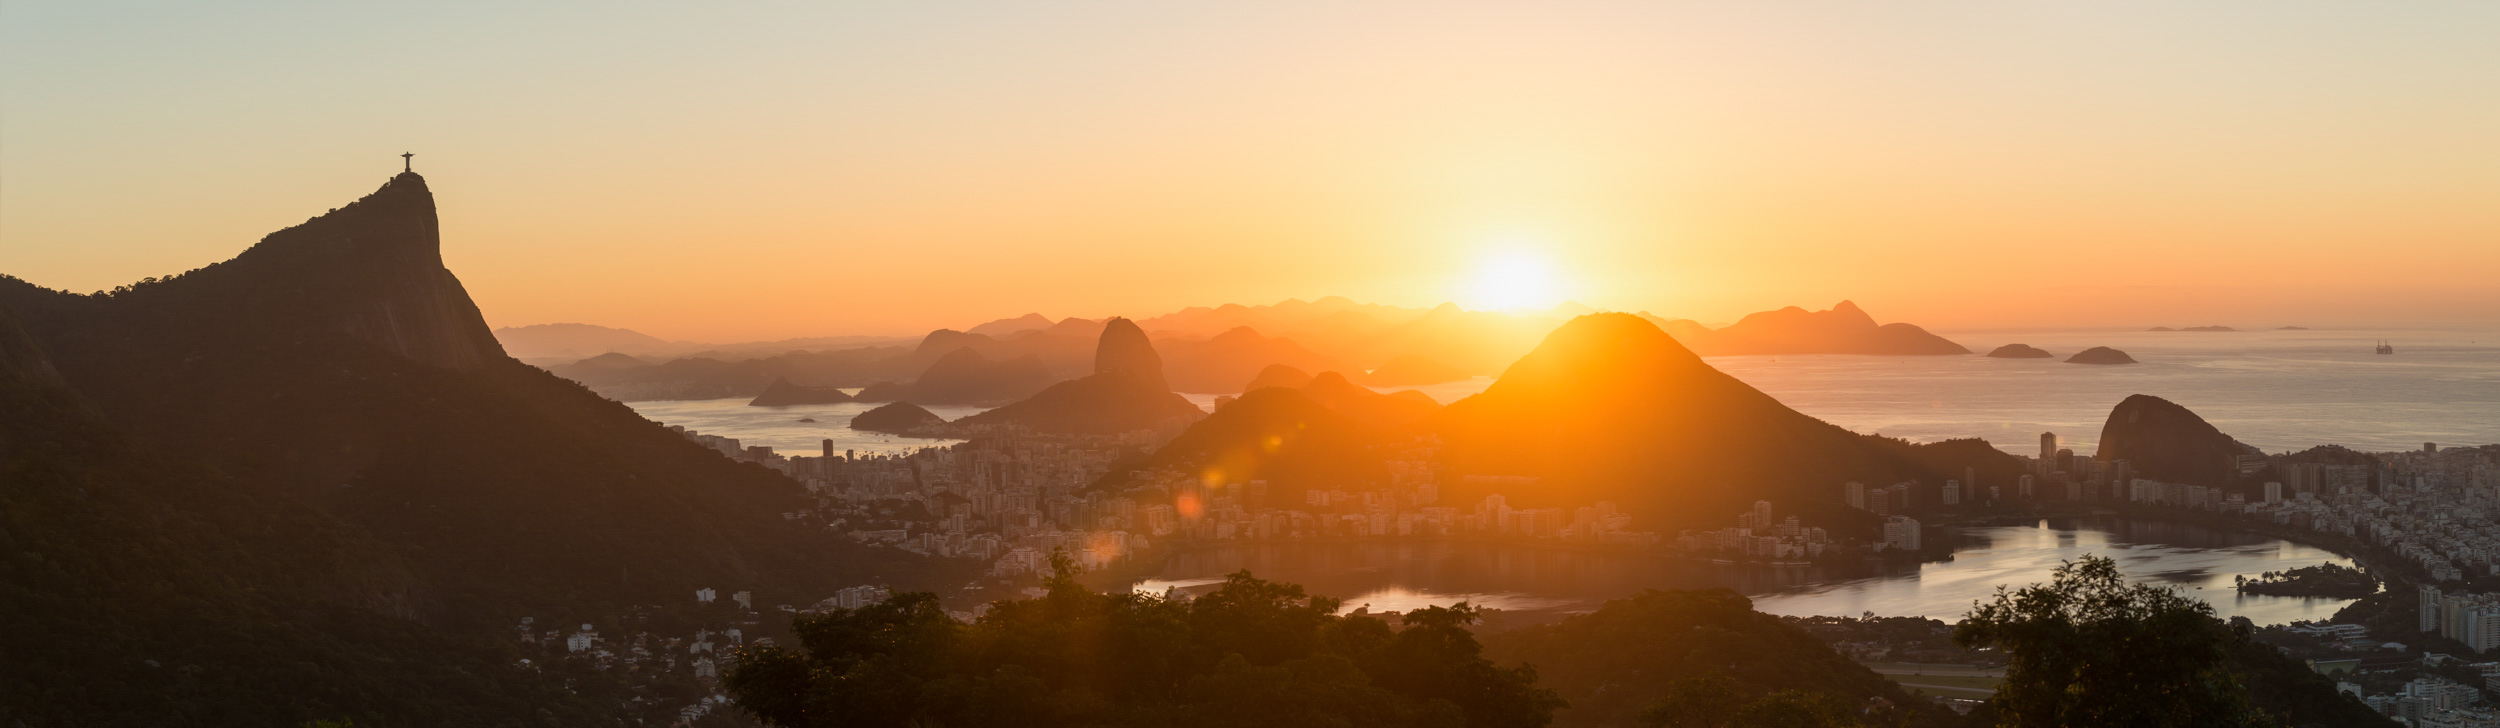 view-sunrise-rio-de-janeiro-brazil-panoramic